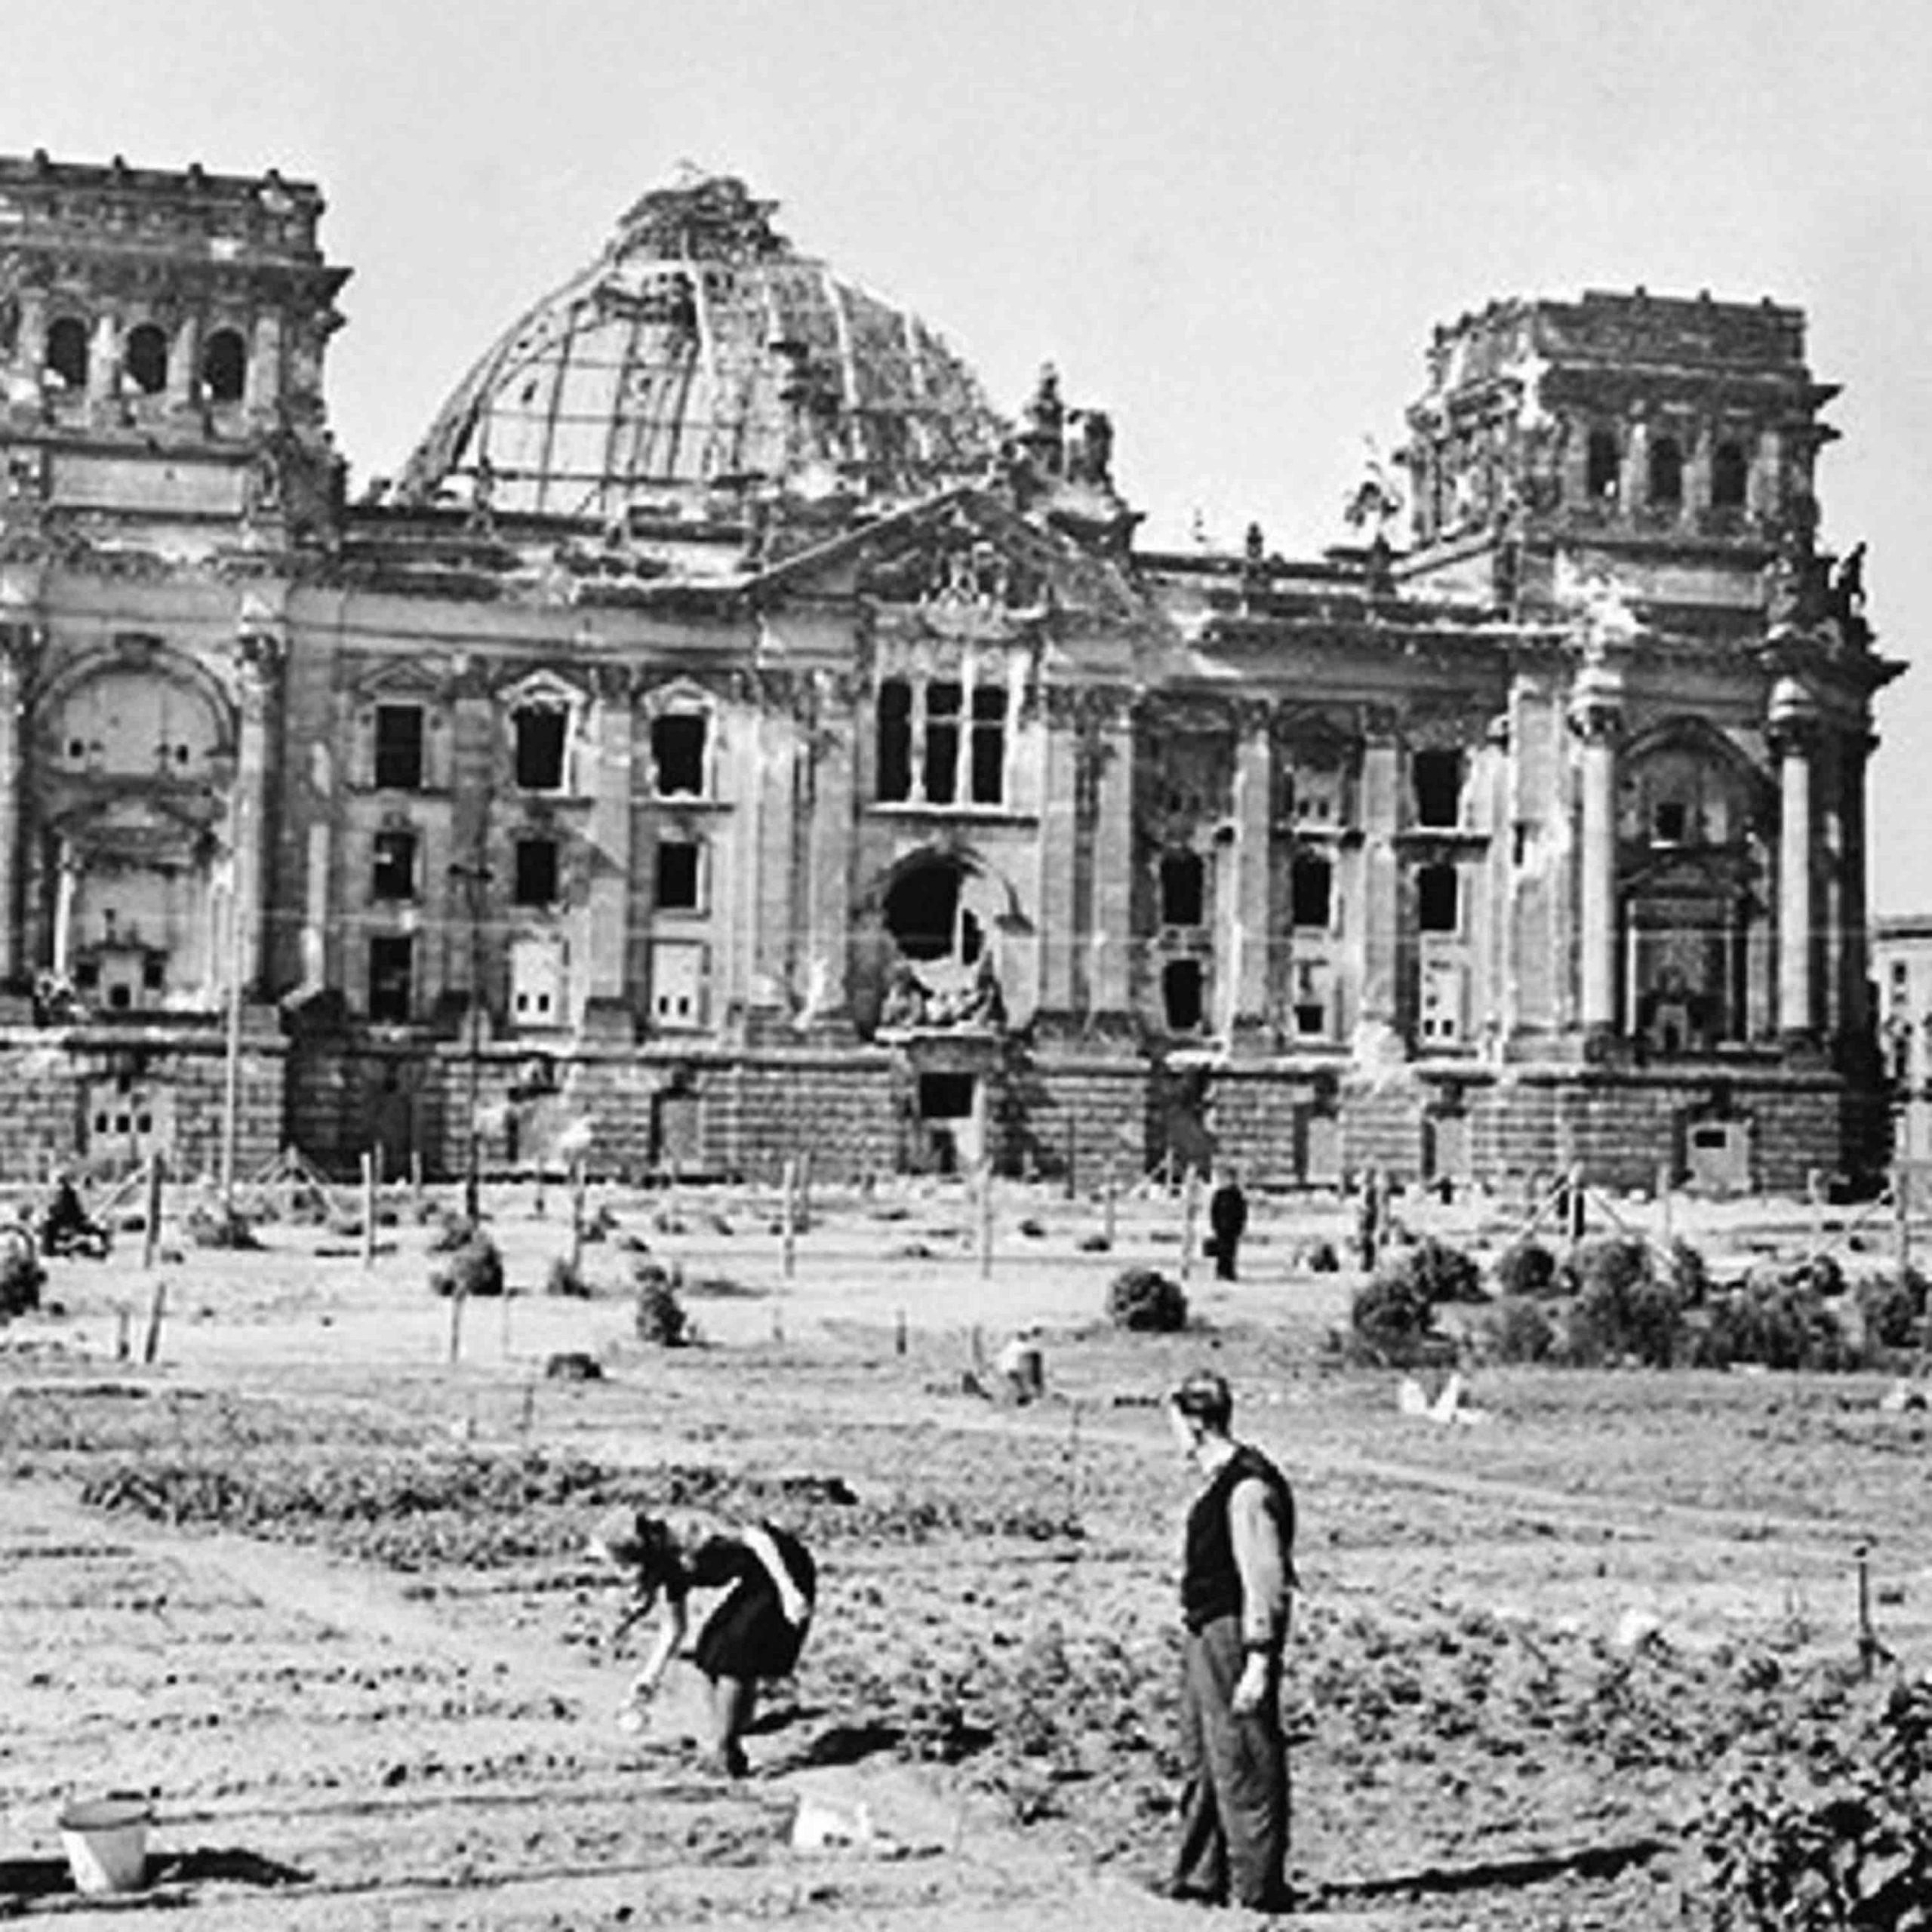 Anónima. Fotografía de huertos urbanos improvisados frente a las ruinas de Reichstag en Berlín tras el final de la II Guerra Mundial